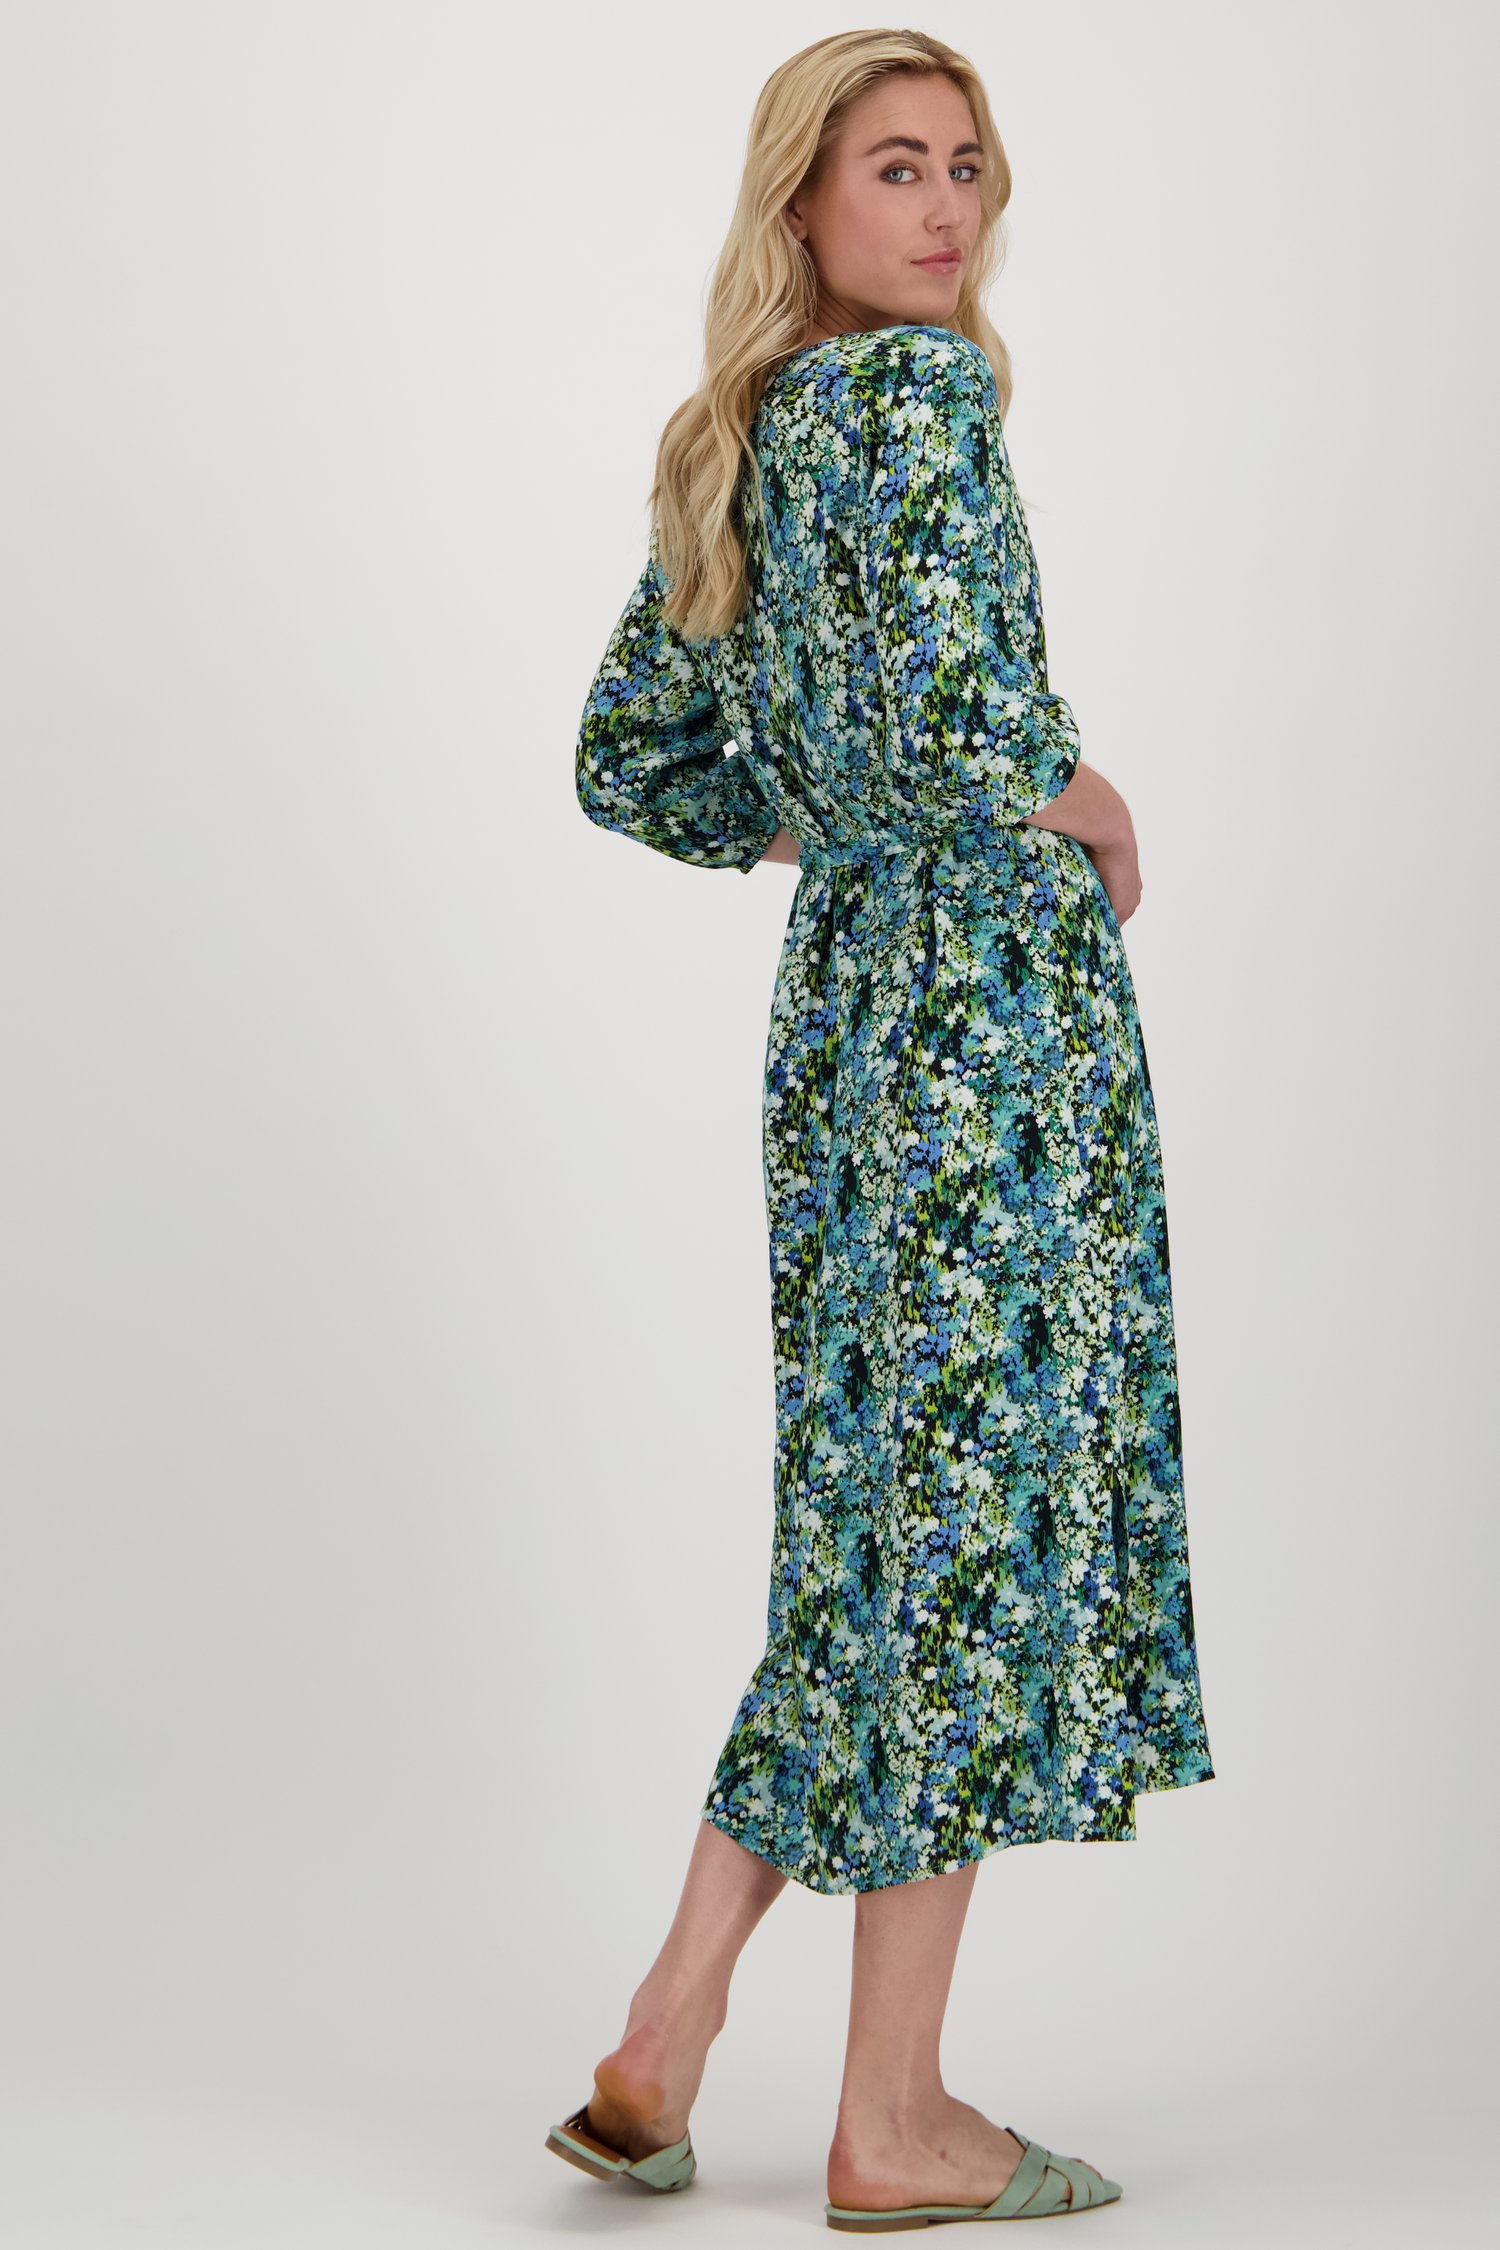 Longue robe bleu-vert à l'imprimé floral délicat de Libelle pour Femmes